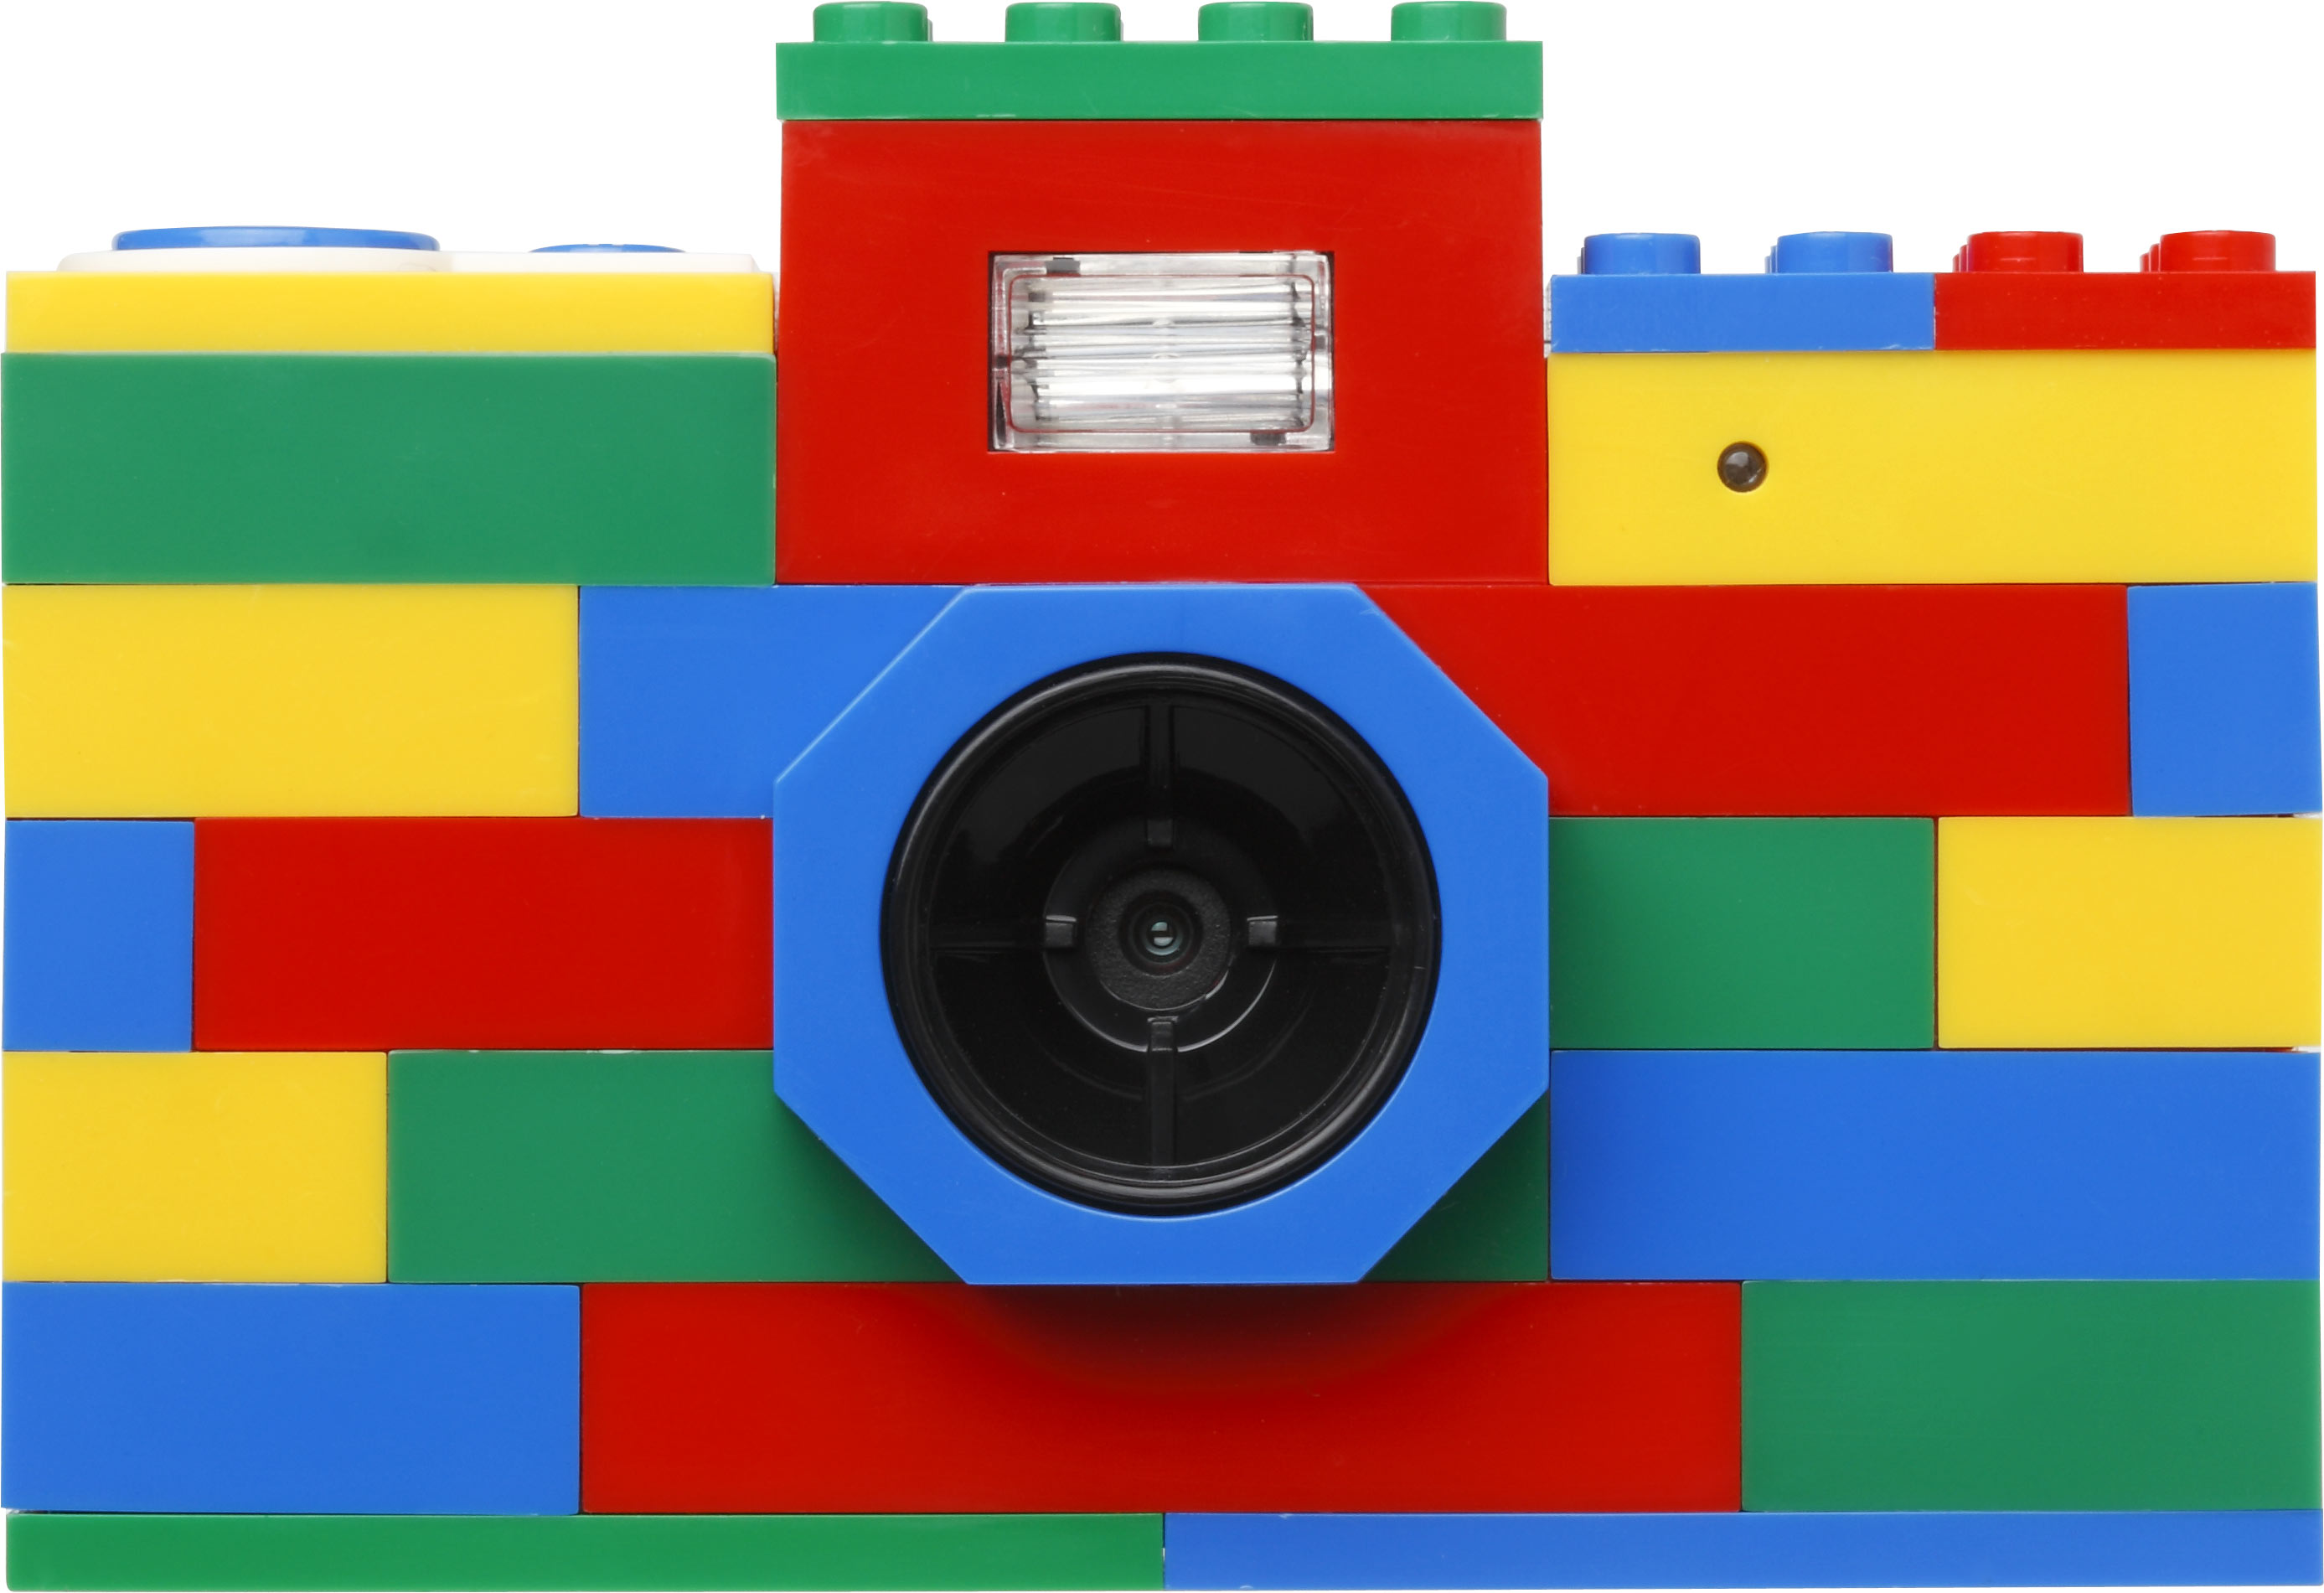 lego camera 乐高相机 圣诞节礼物首选!大人小孩都喜欢 !